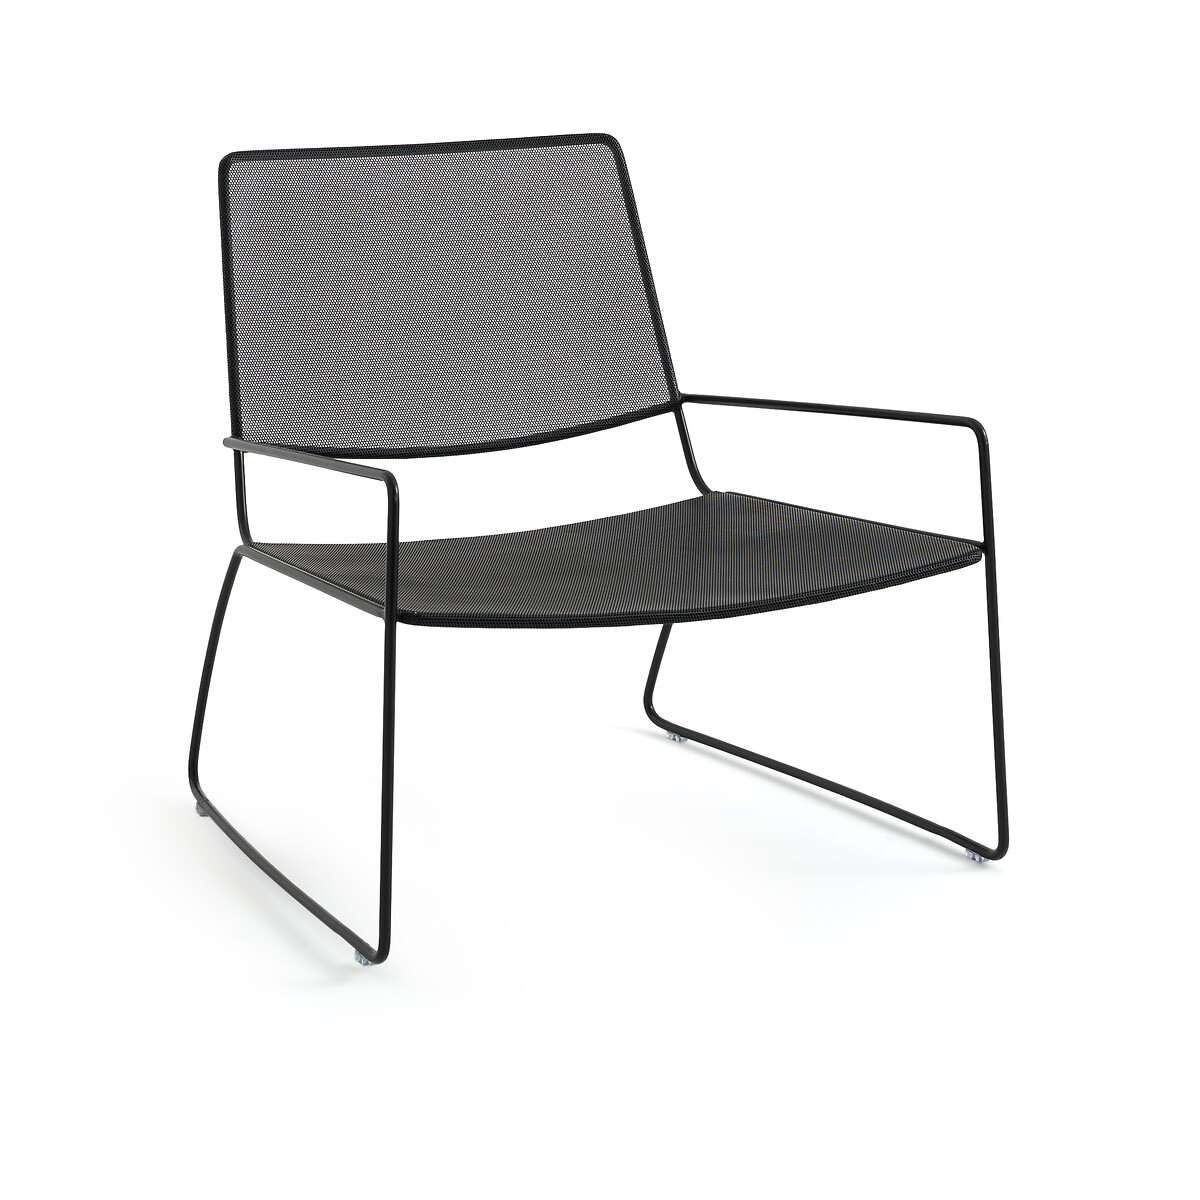 Кресло садовое из металла Wallace единый размер черный кресло садовое из стали и полимера sabby единый размер бежевый